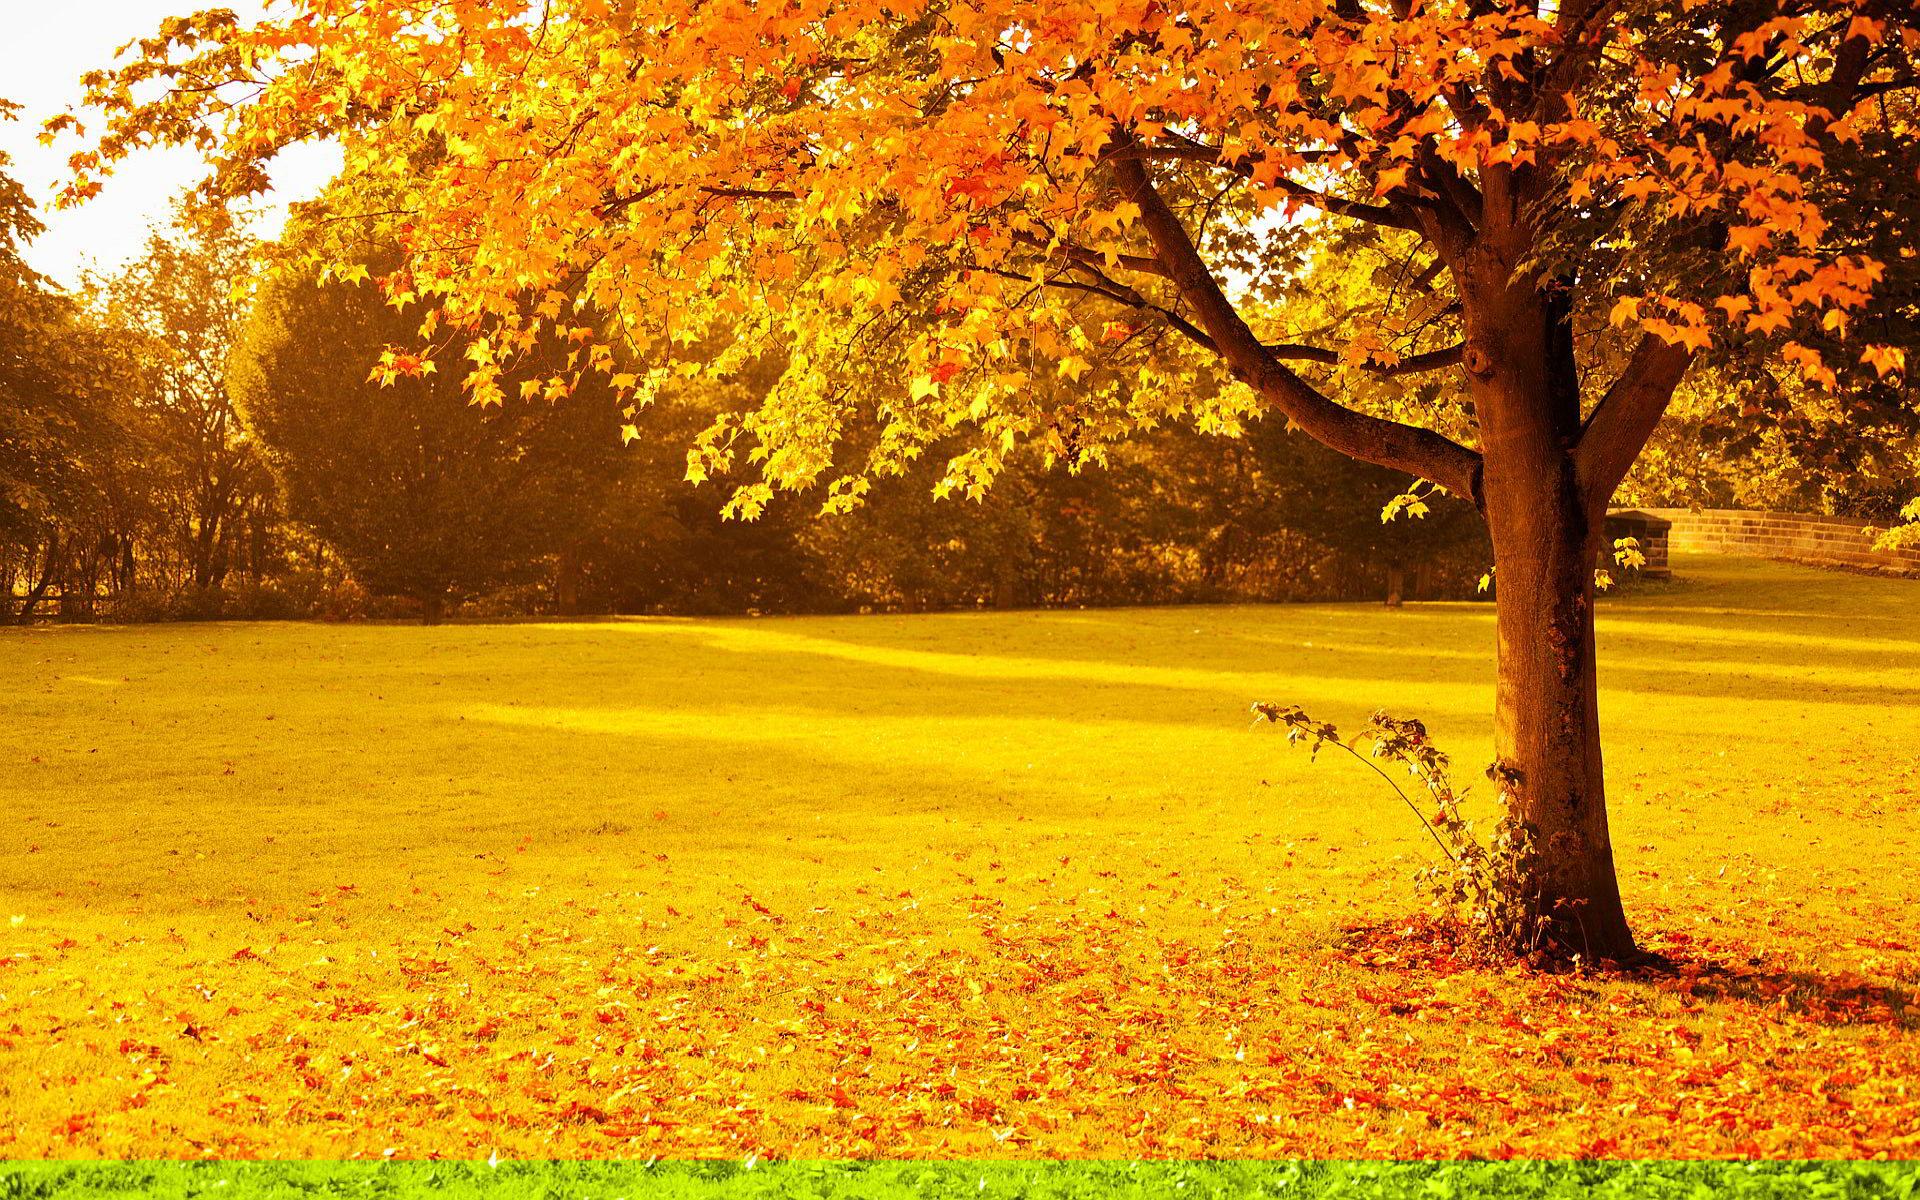 Hình nền mùa thu: Khi thời tiết bắt đầu se lạnh và mùa thu cũng đến, bạn có thể chọn cho mình những bức ảnh về mùa thu để cảm nhận sắc màu vàng đỏ sang trọng. Lựa chọn những hình nền đẹp mắt với chủ đề mùa thu để thêm phần tươi mới cho ngày mới của bạn.